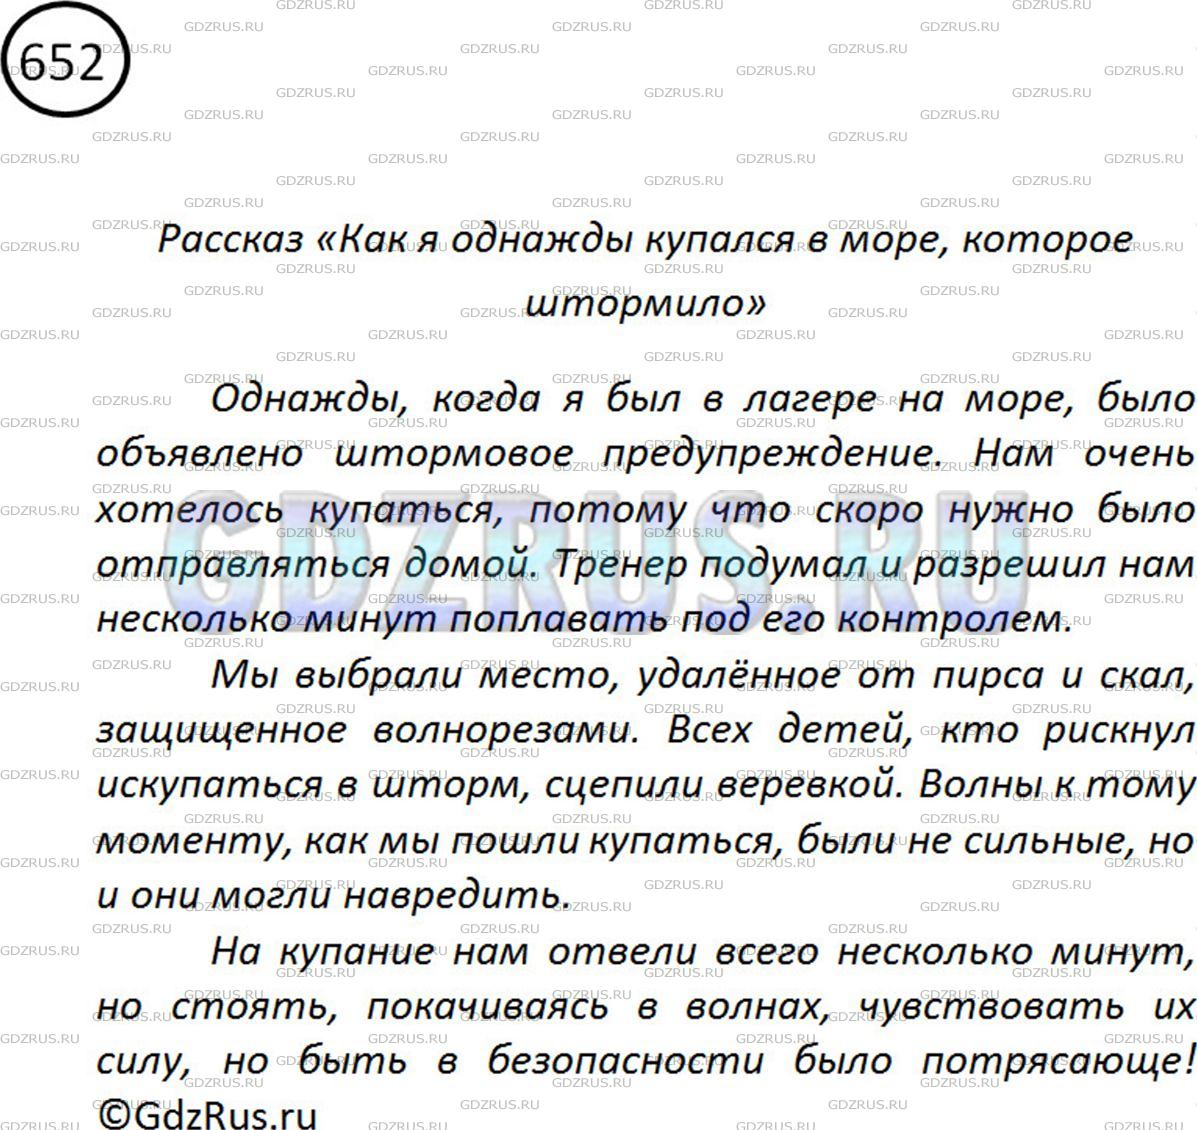 Фото картинка ответа 2: Упражнение № 652 из ГДЗ по Русскому языку 5 класс: Ладыженская